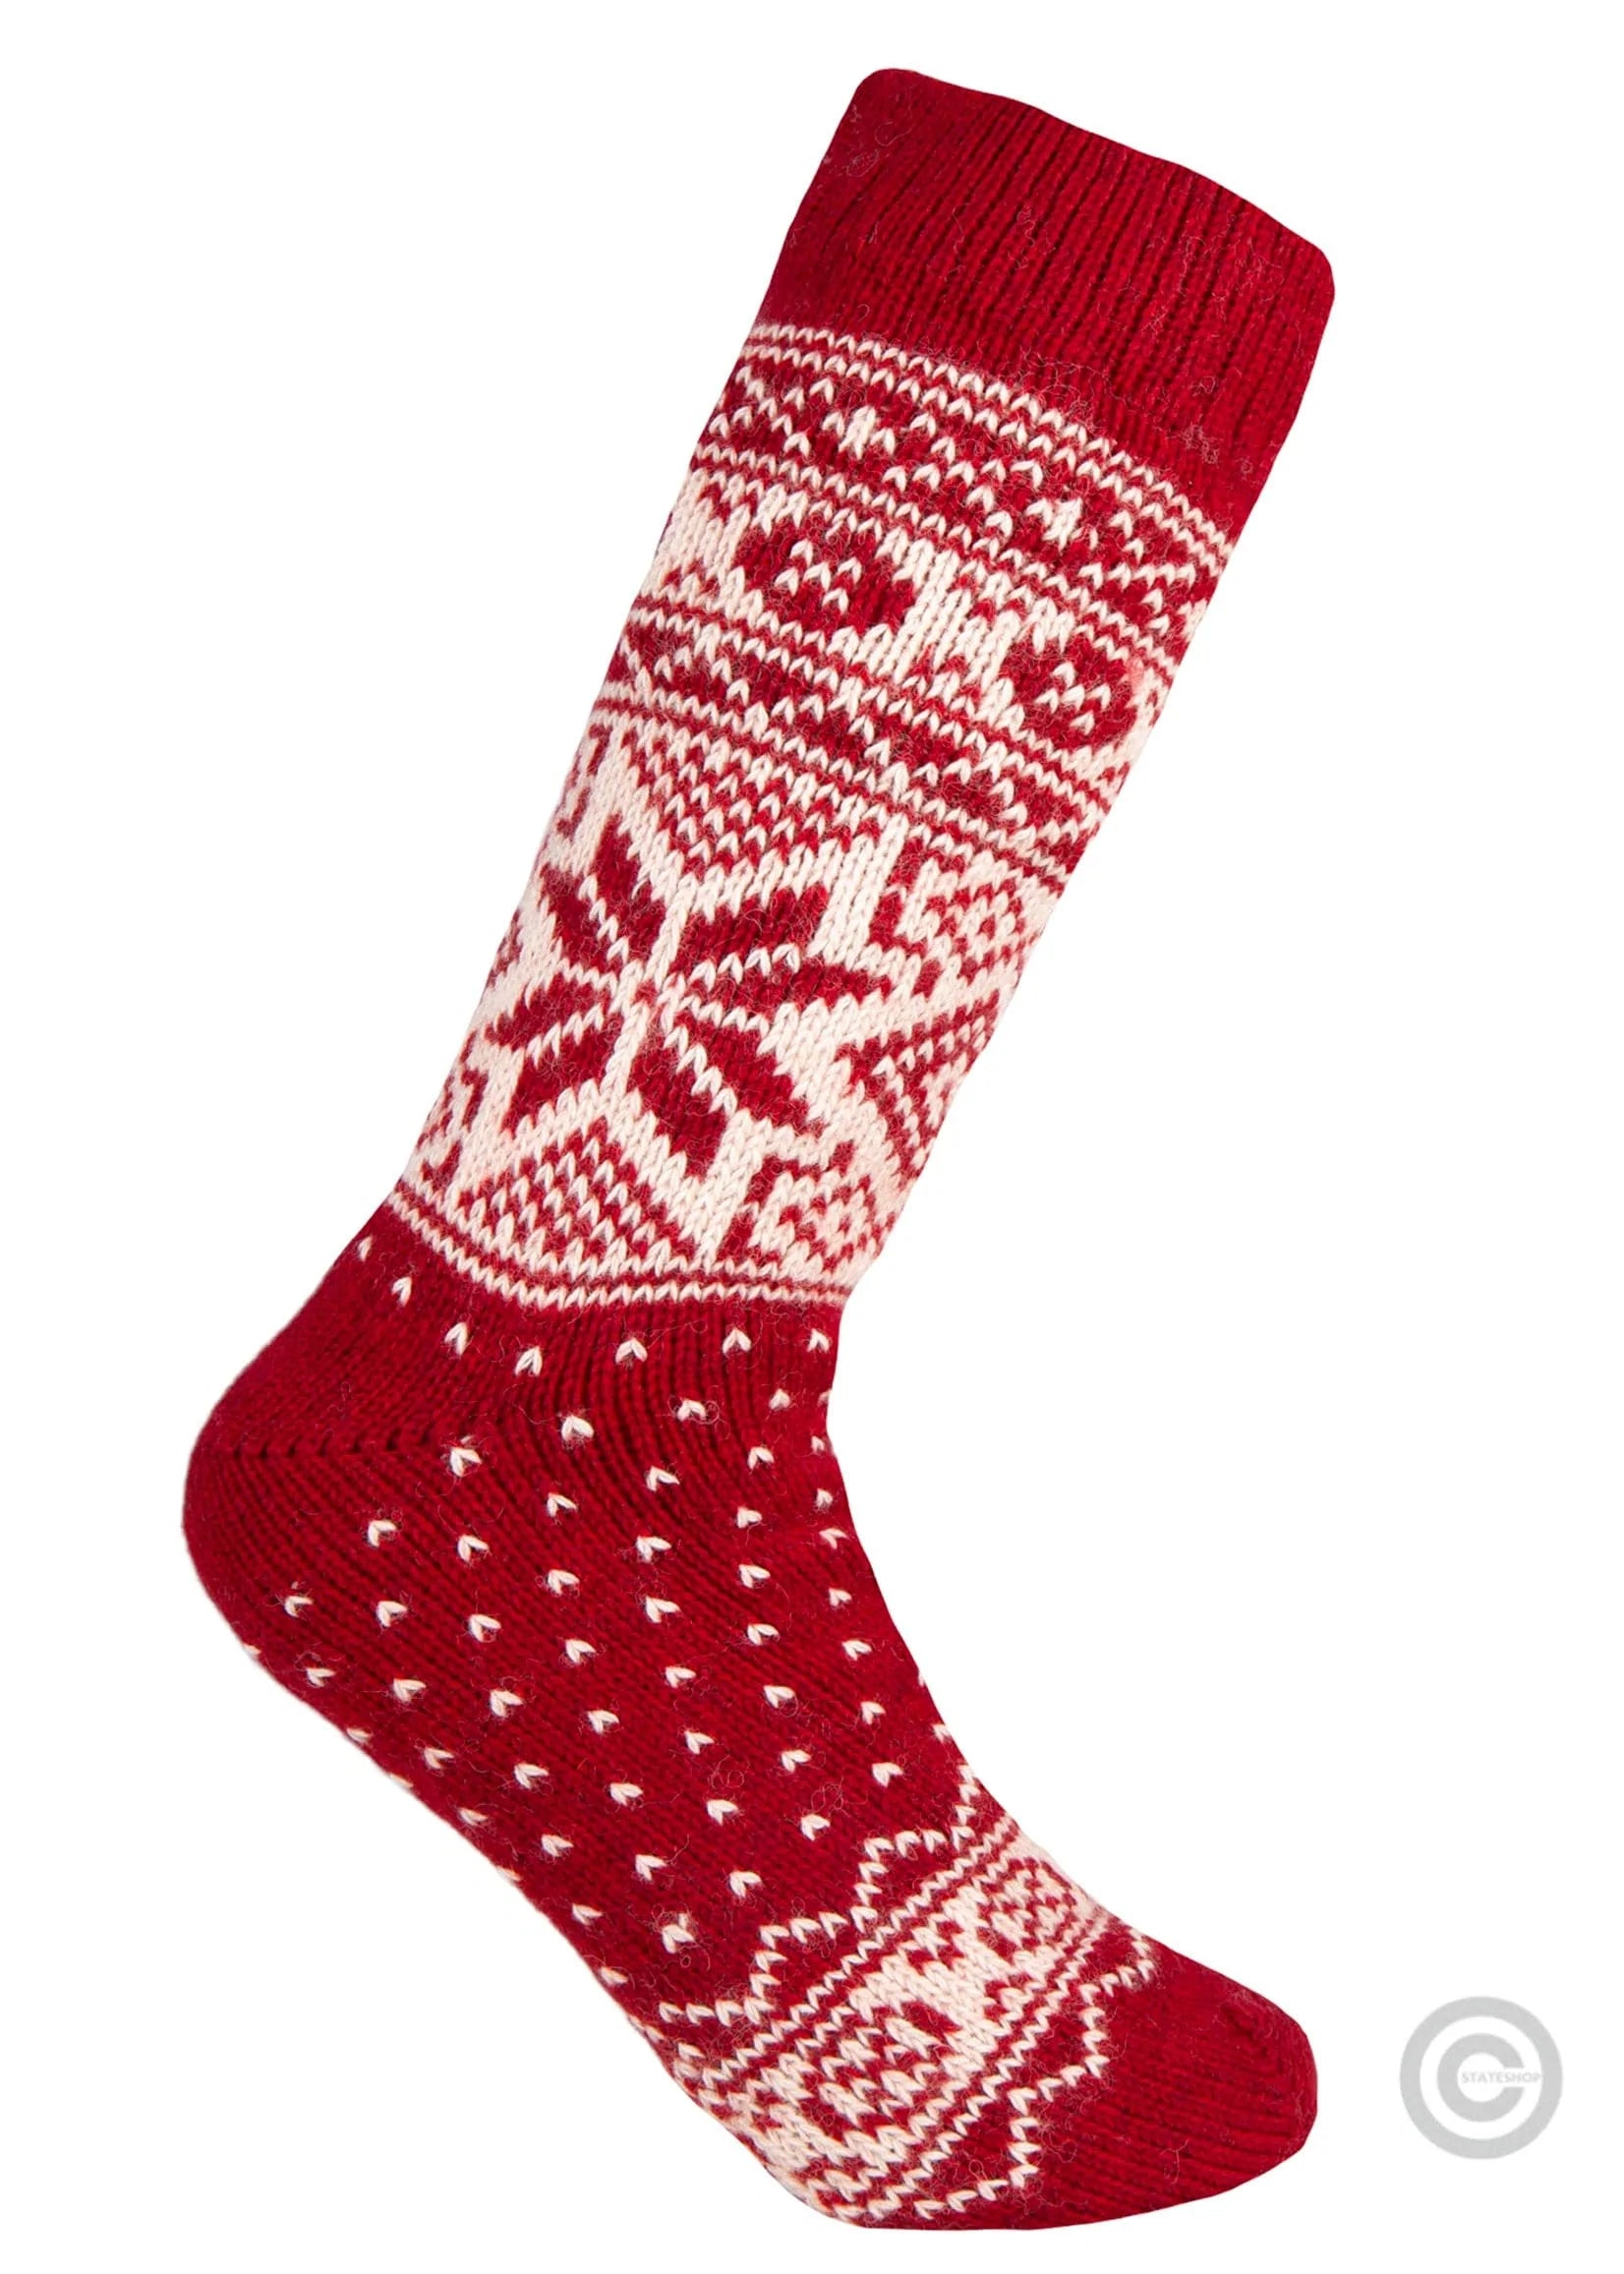 Norfinde Norwegian wool socks "Snowflake" red